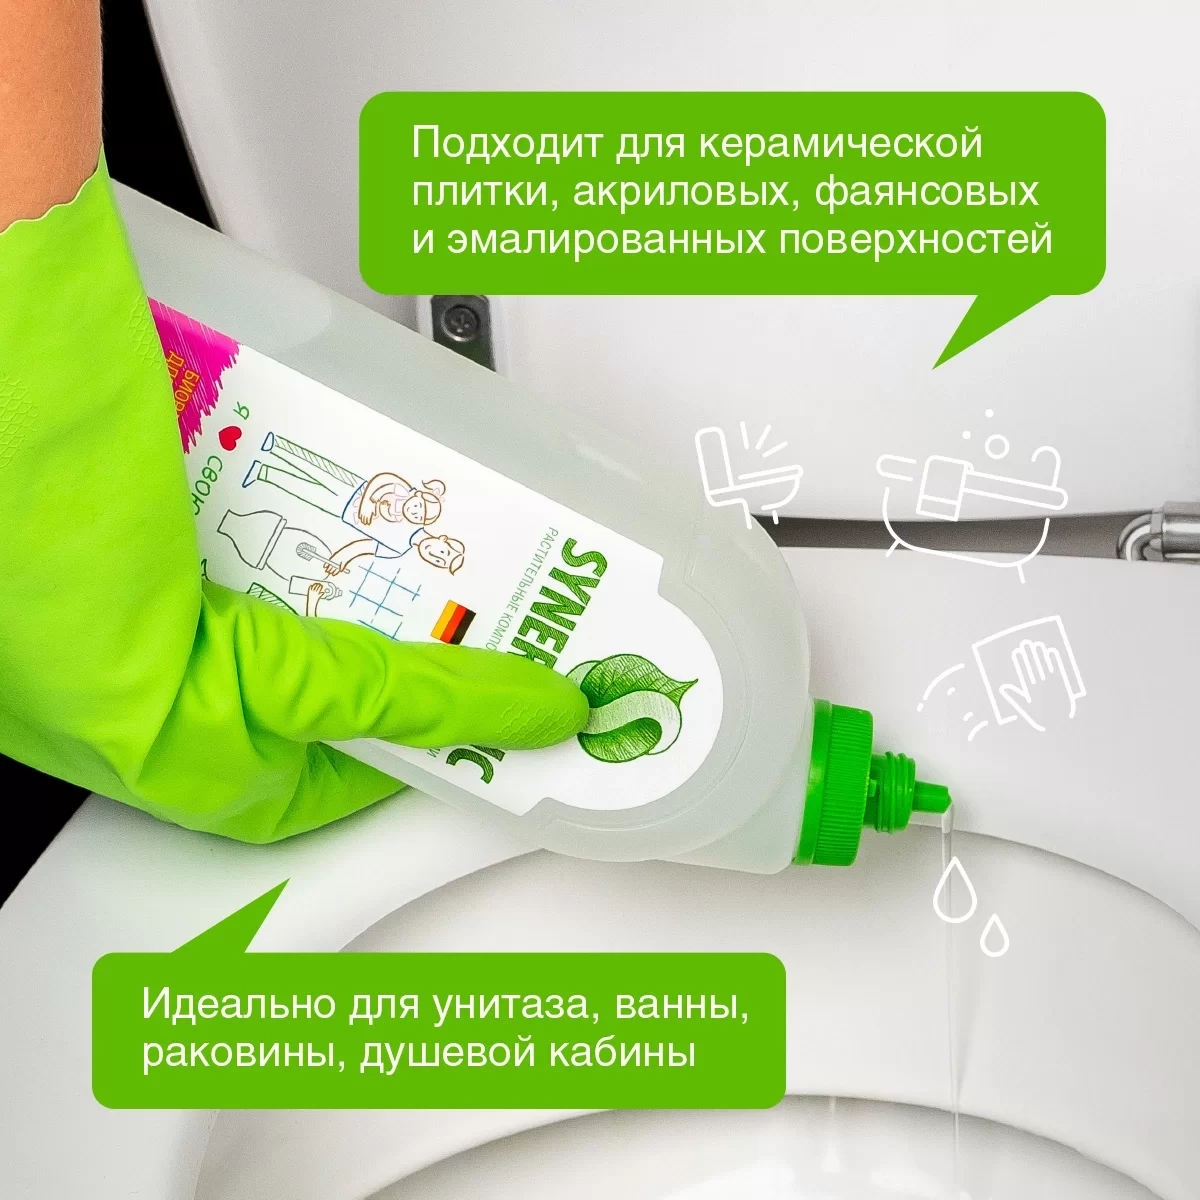 Средство для мытья сантехники Synergetic кислотное биоразлагаемое 1л